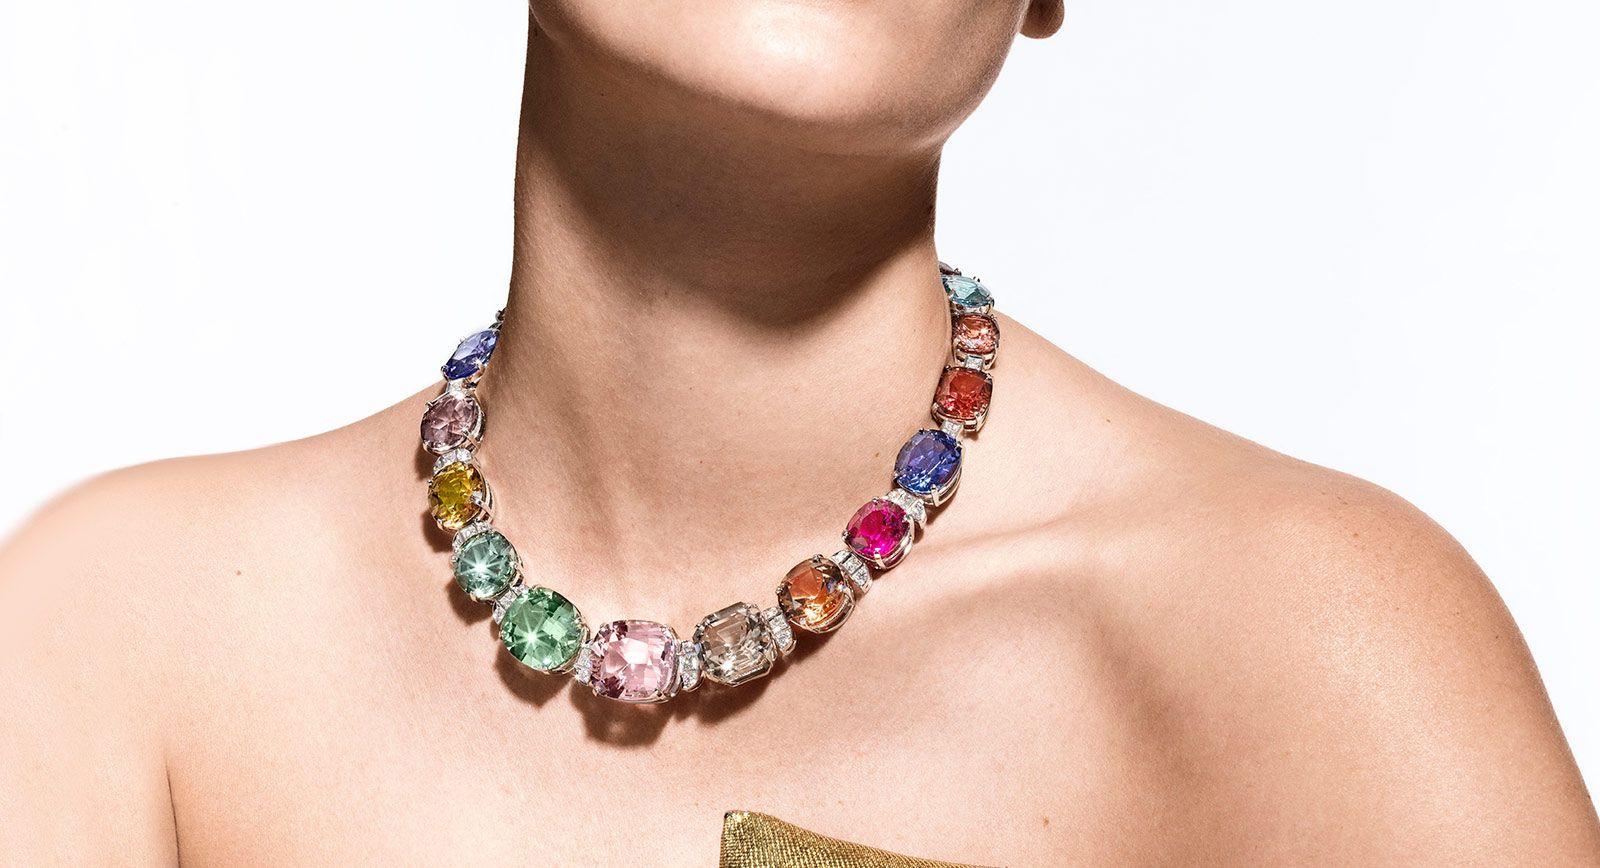 Tiffany & Co., Jewelry